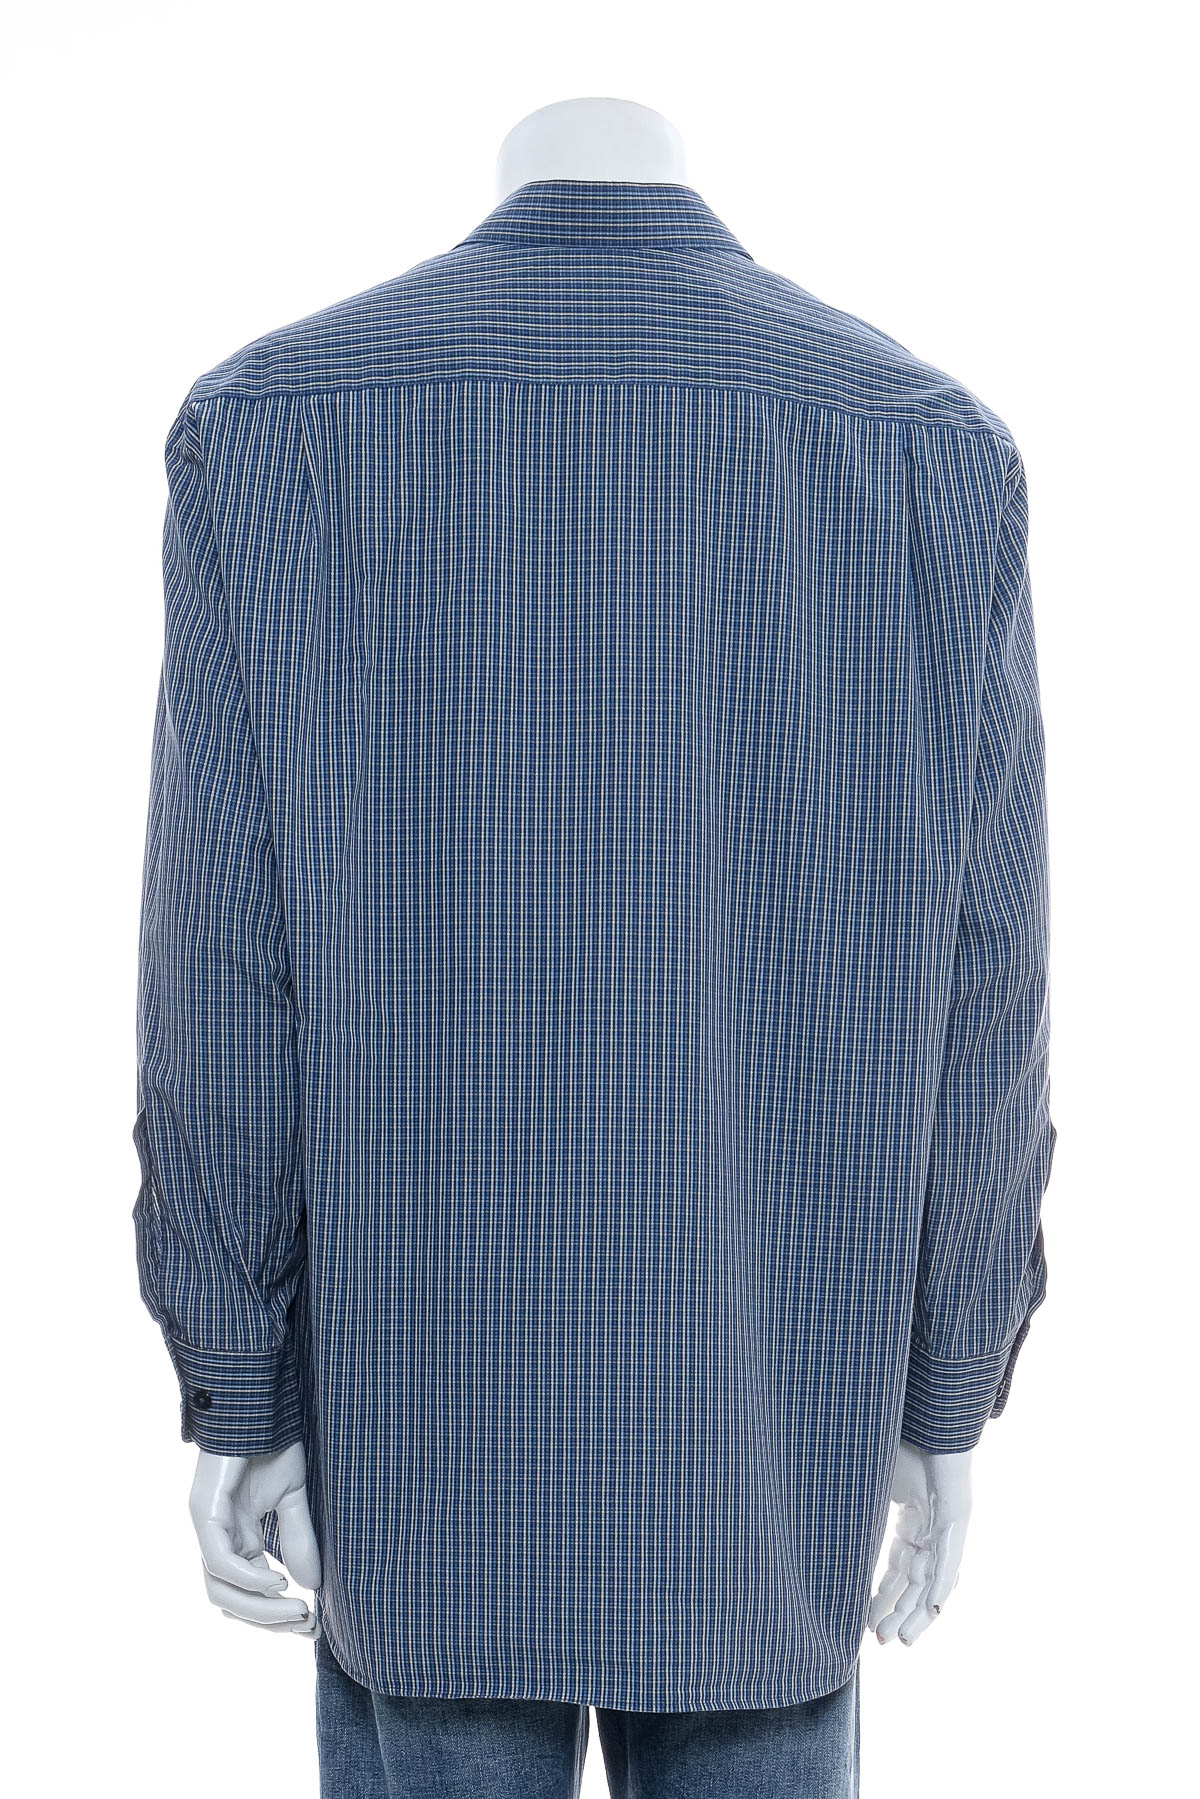 Ανδρικό πουκάμισο - Walbusch - 1